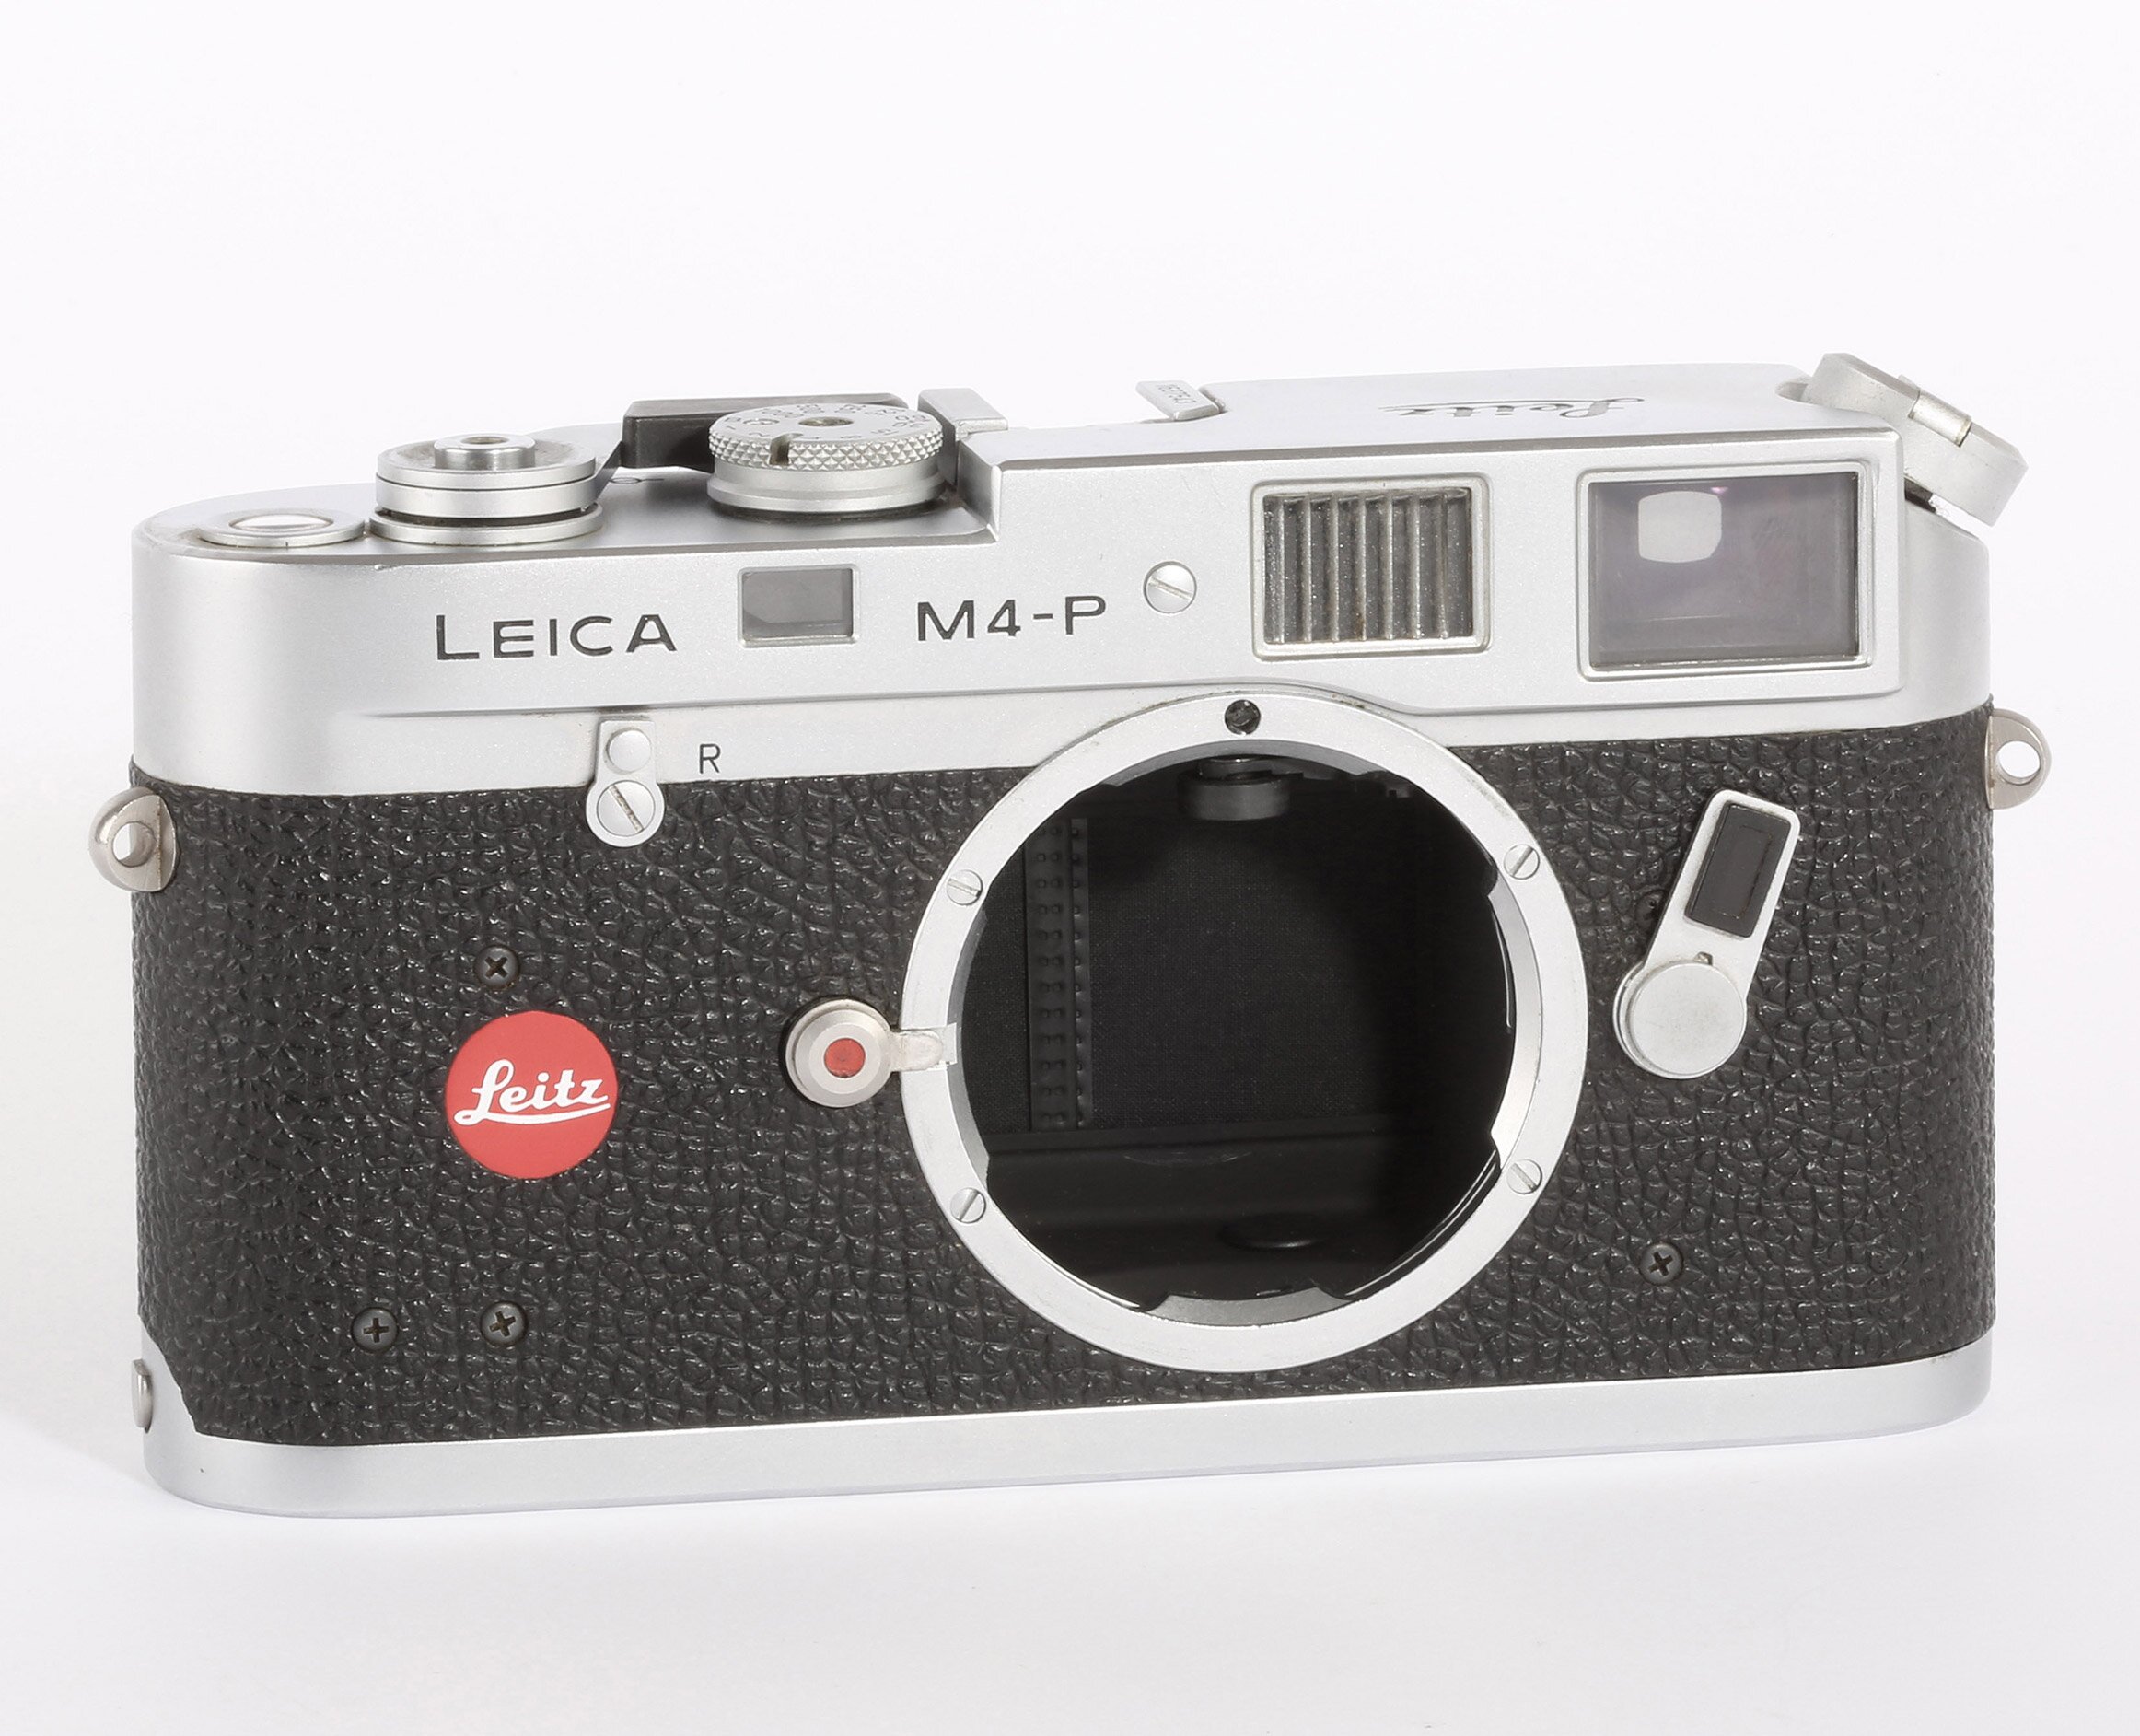 Leica M4-P 1913-1983 "70 Jahre Leica Edition" 10416